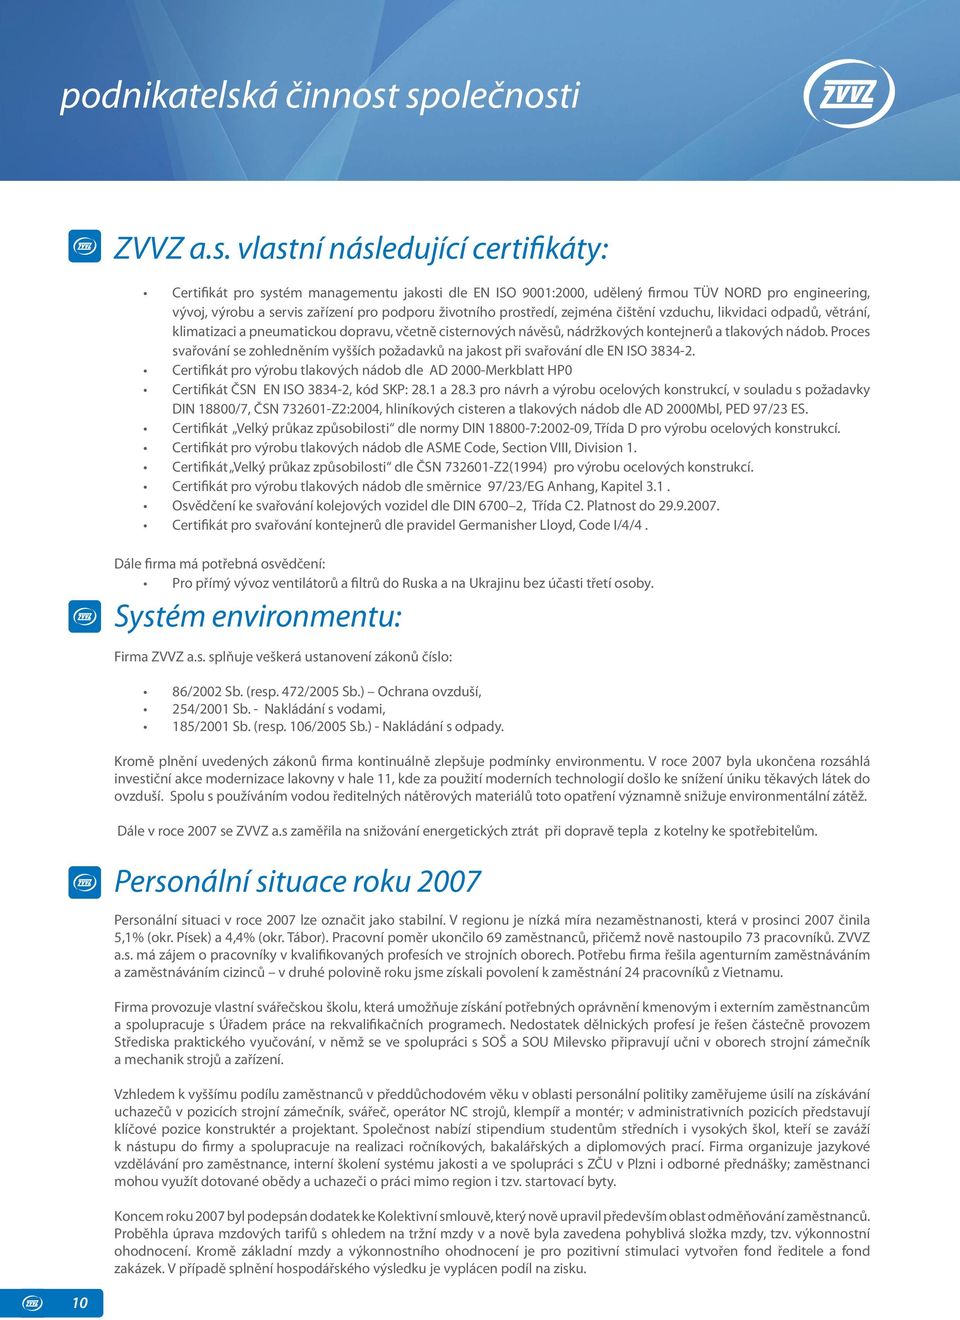 společnosti ZVVZ a.s. vlastní následující certifikáty: Certifikát pro systém managementu jakosti dle EN ISO 9001:2000, udělený firmou TÜV NORD pro engineering, vývoj, výrobu a servis zařízení pro